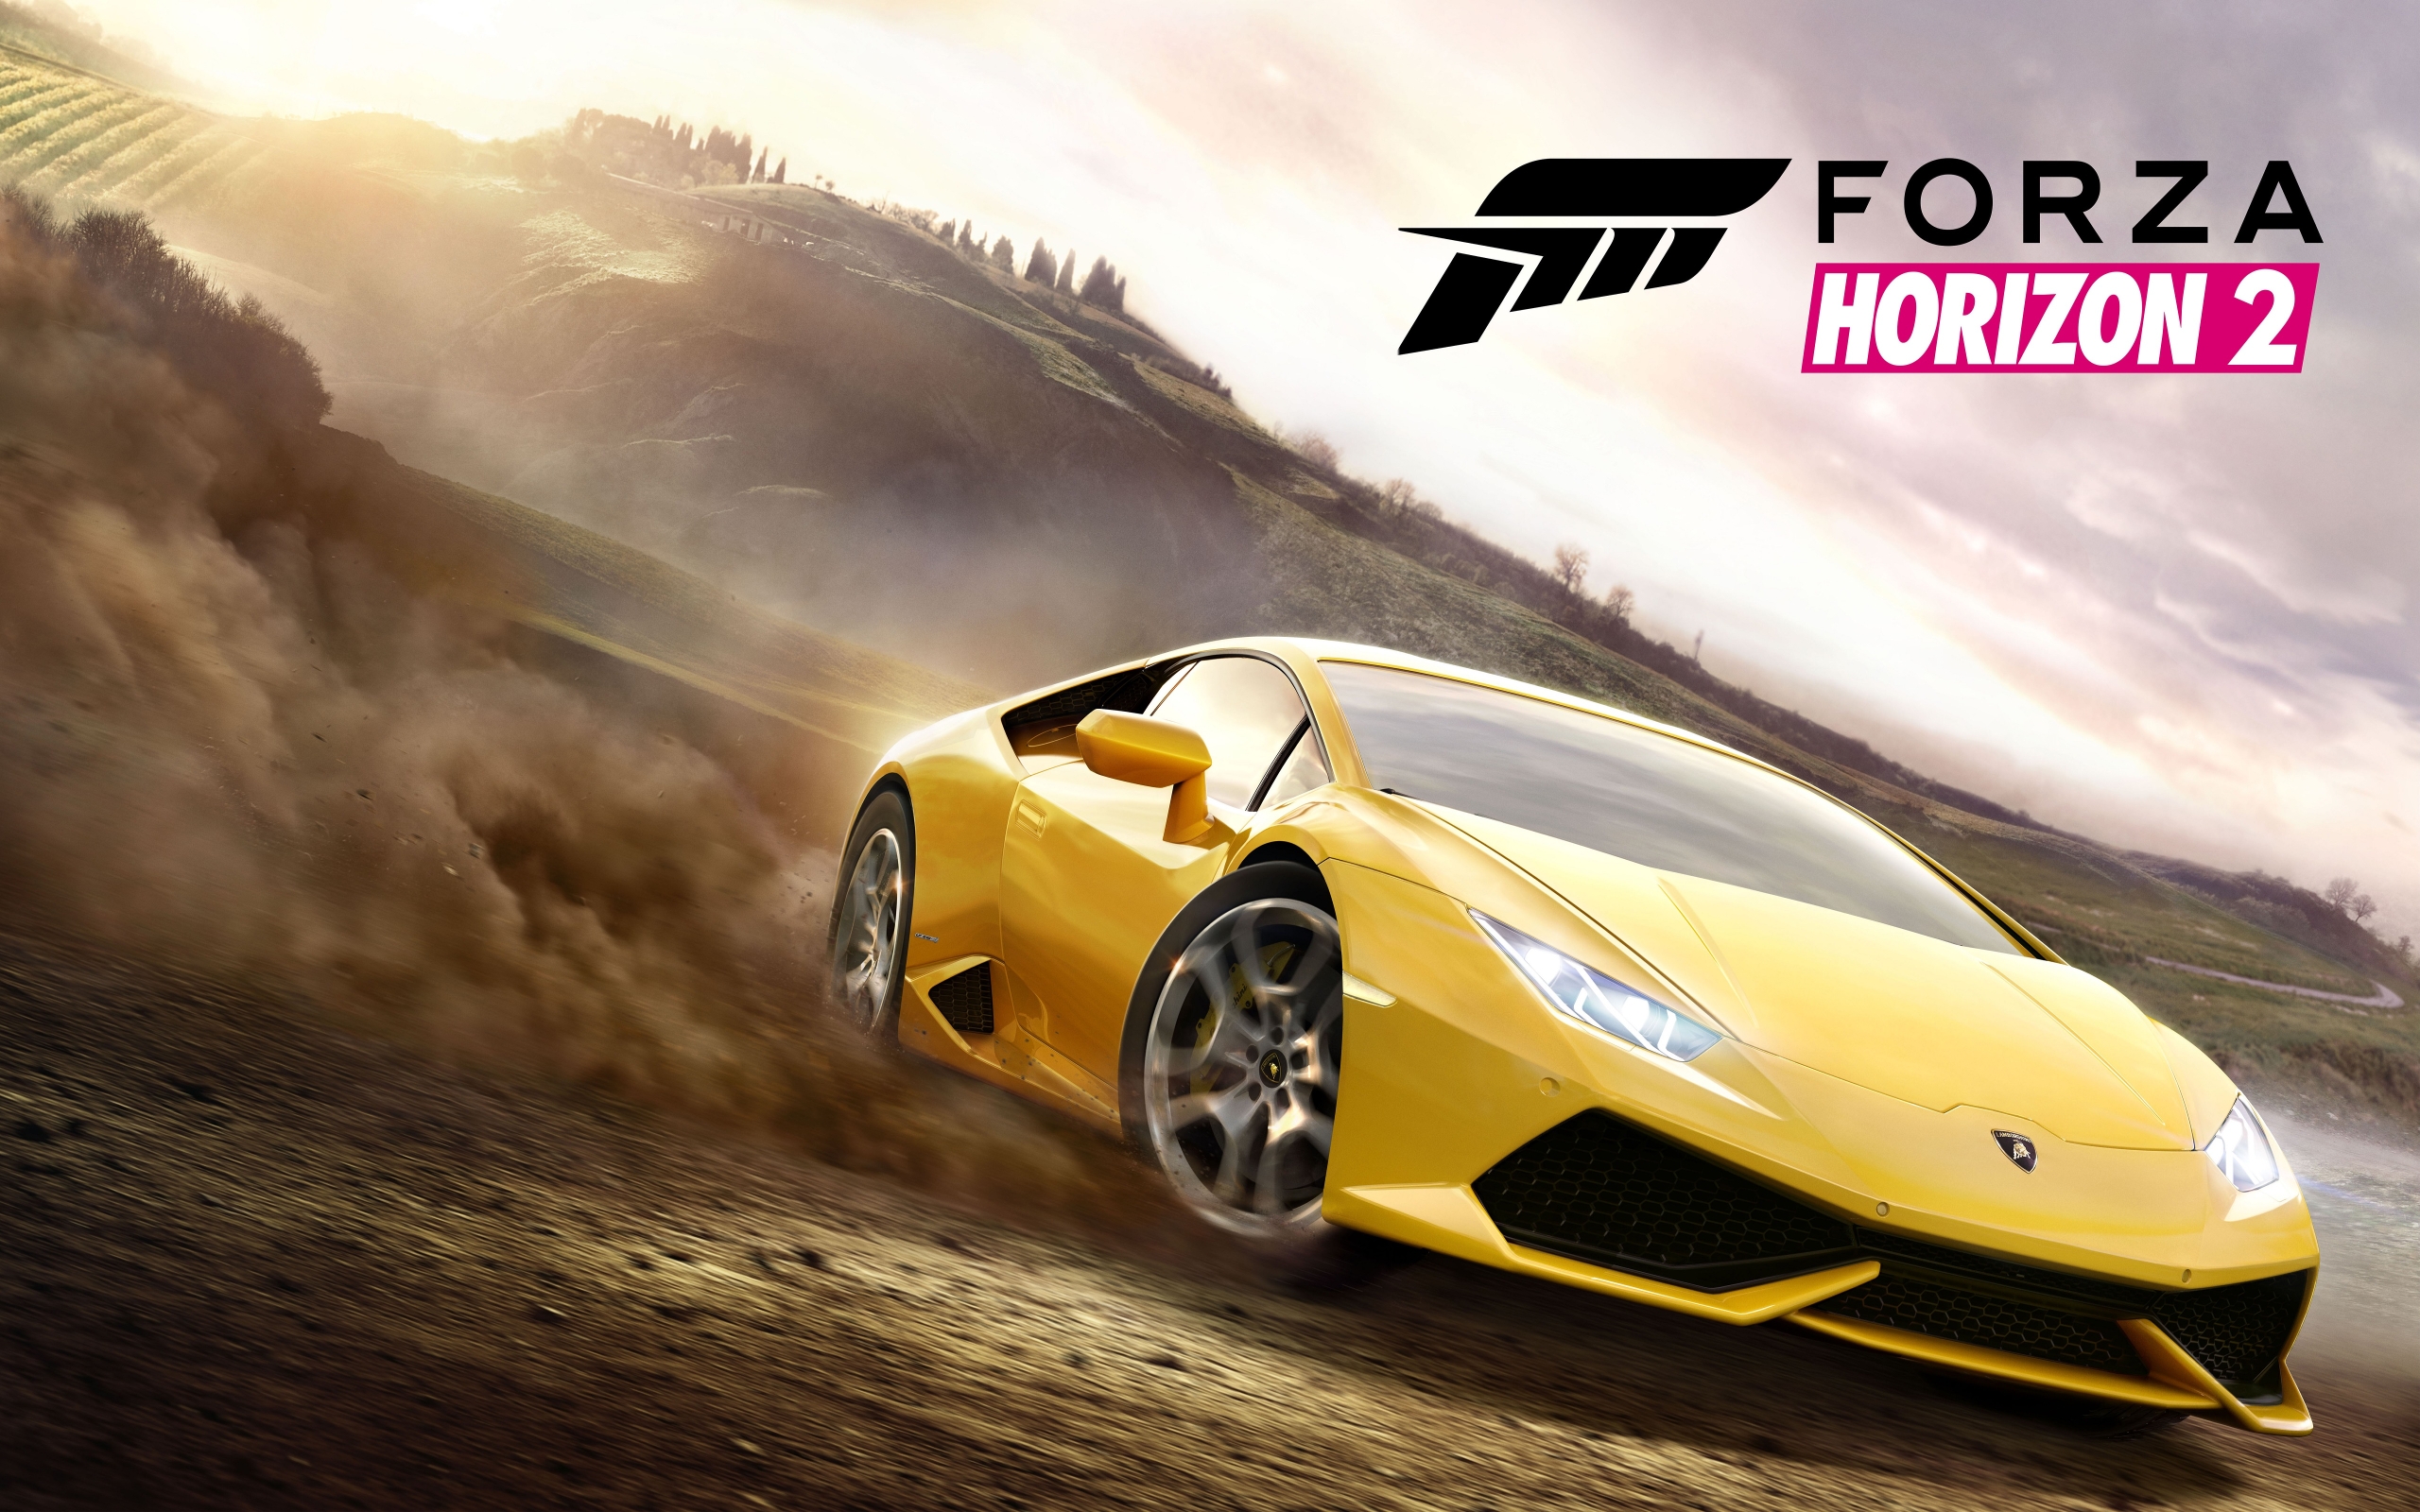 Forza Horizon 2 for 2560 x 1600 widescreen resolution